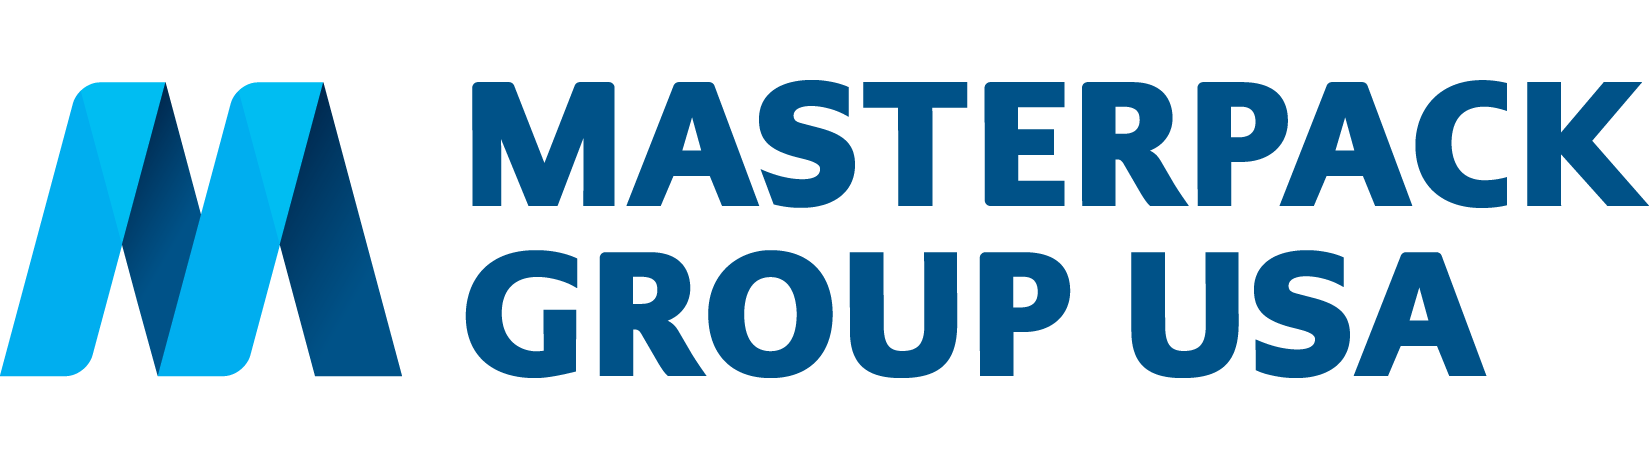 Masterpack USA logo CMYK-4